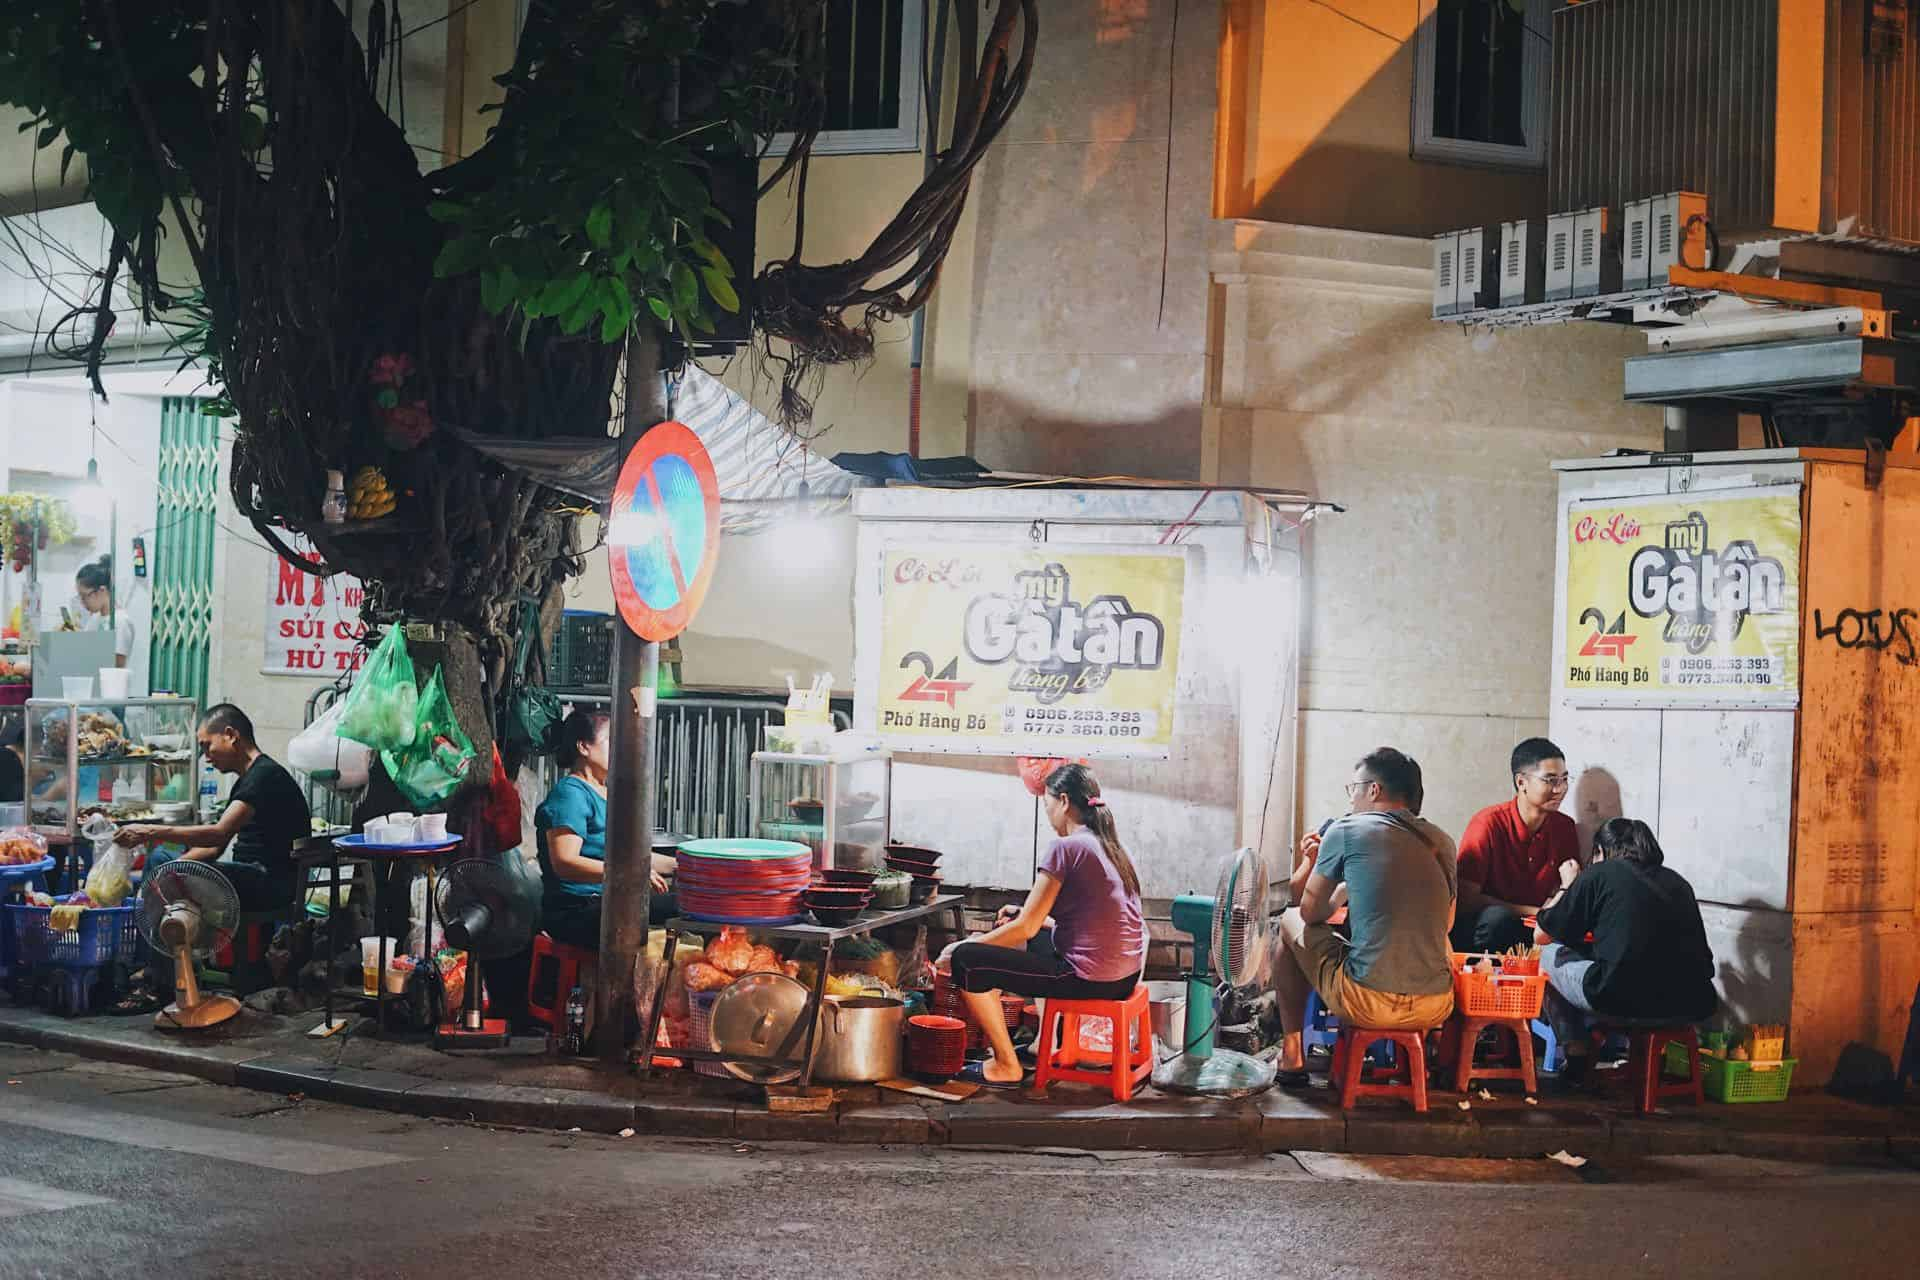 Mỳ gà tần Hàng Bồ thu hút thực khách đông nghịch mỗi đêm